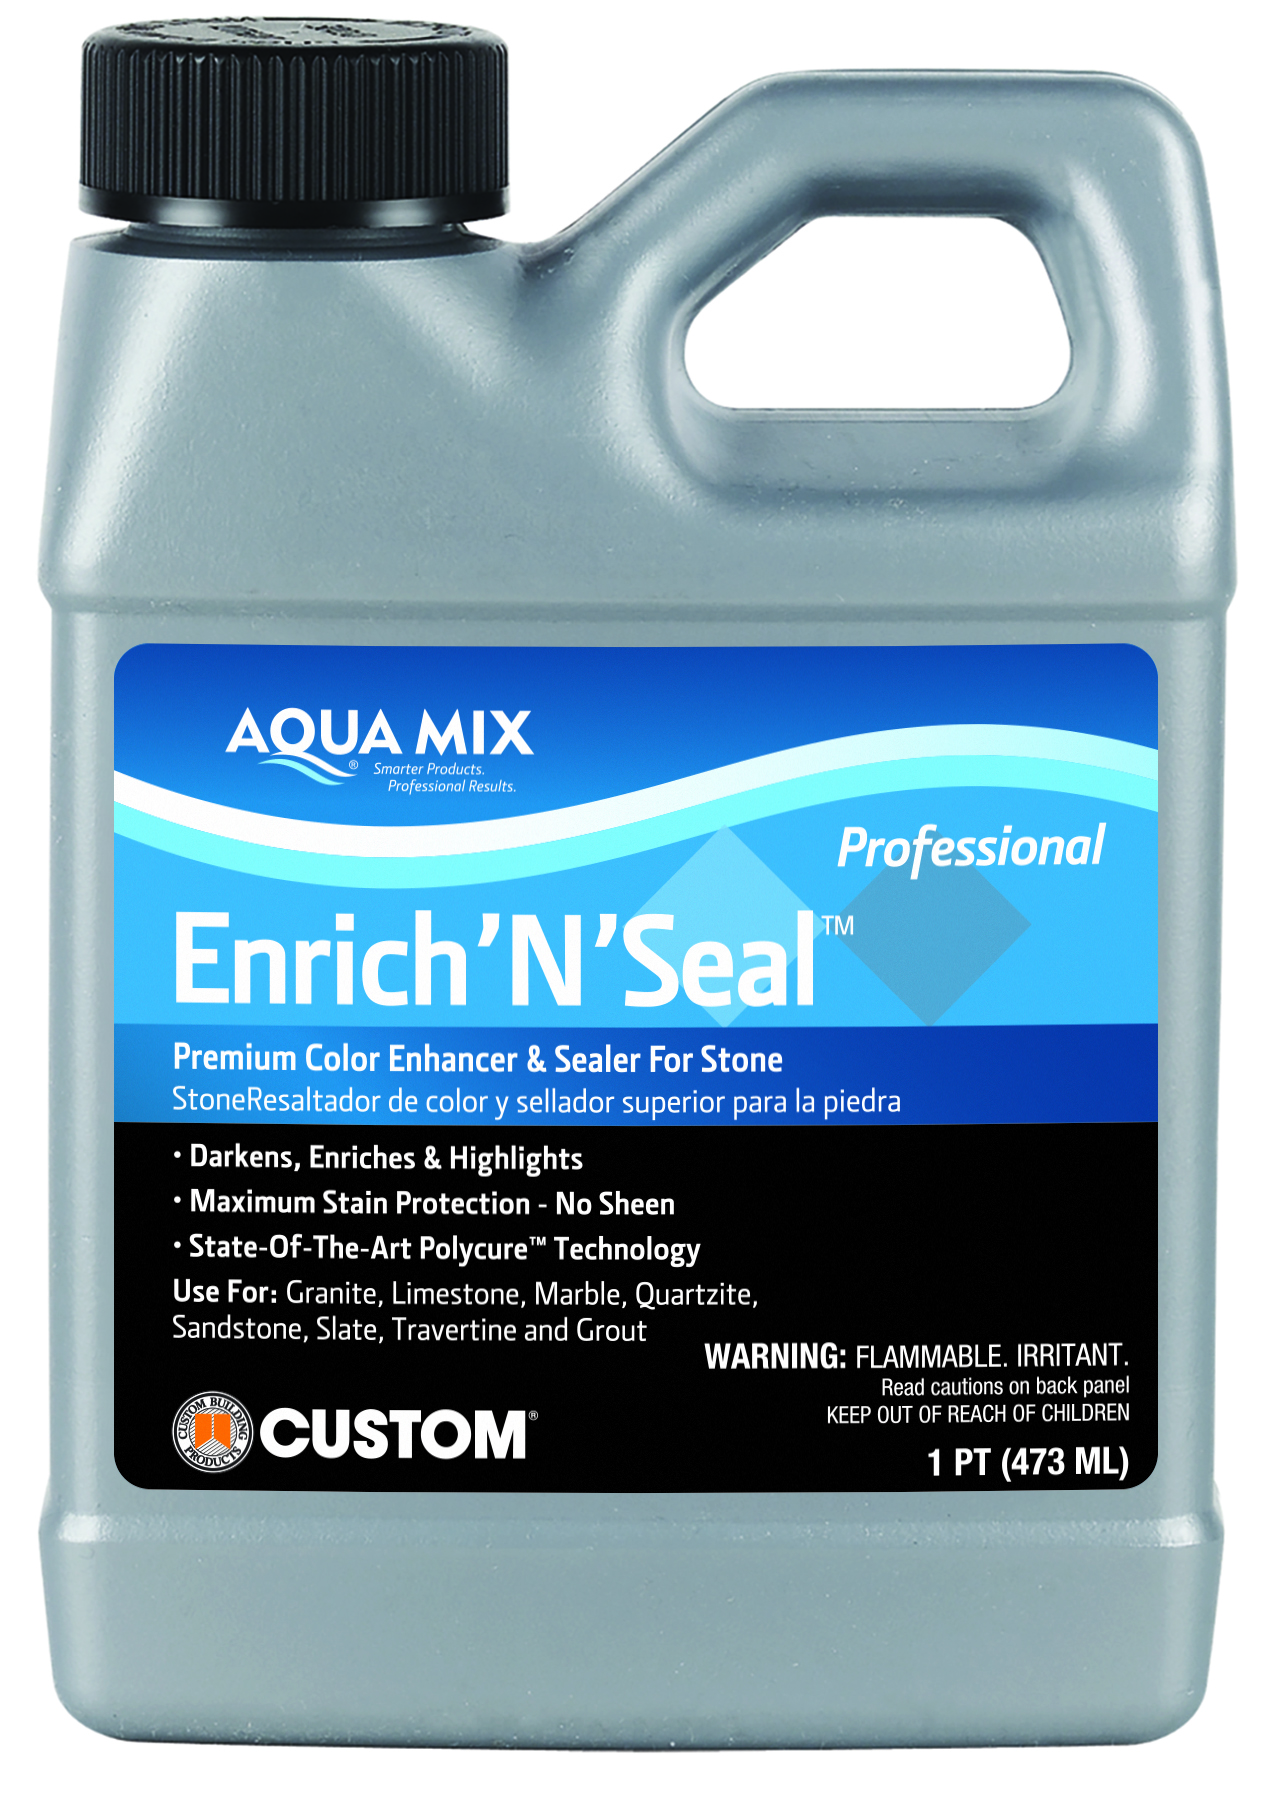 Aqua Mix (C100250) product